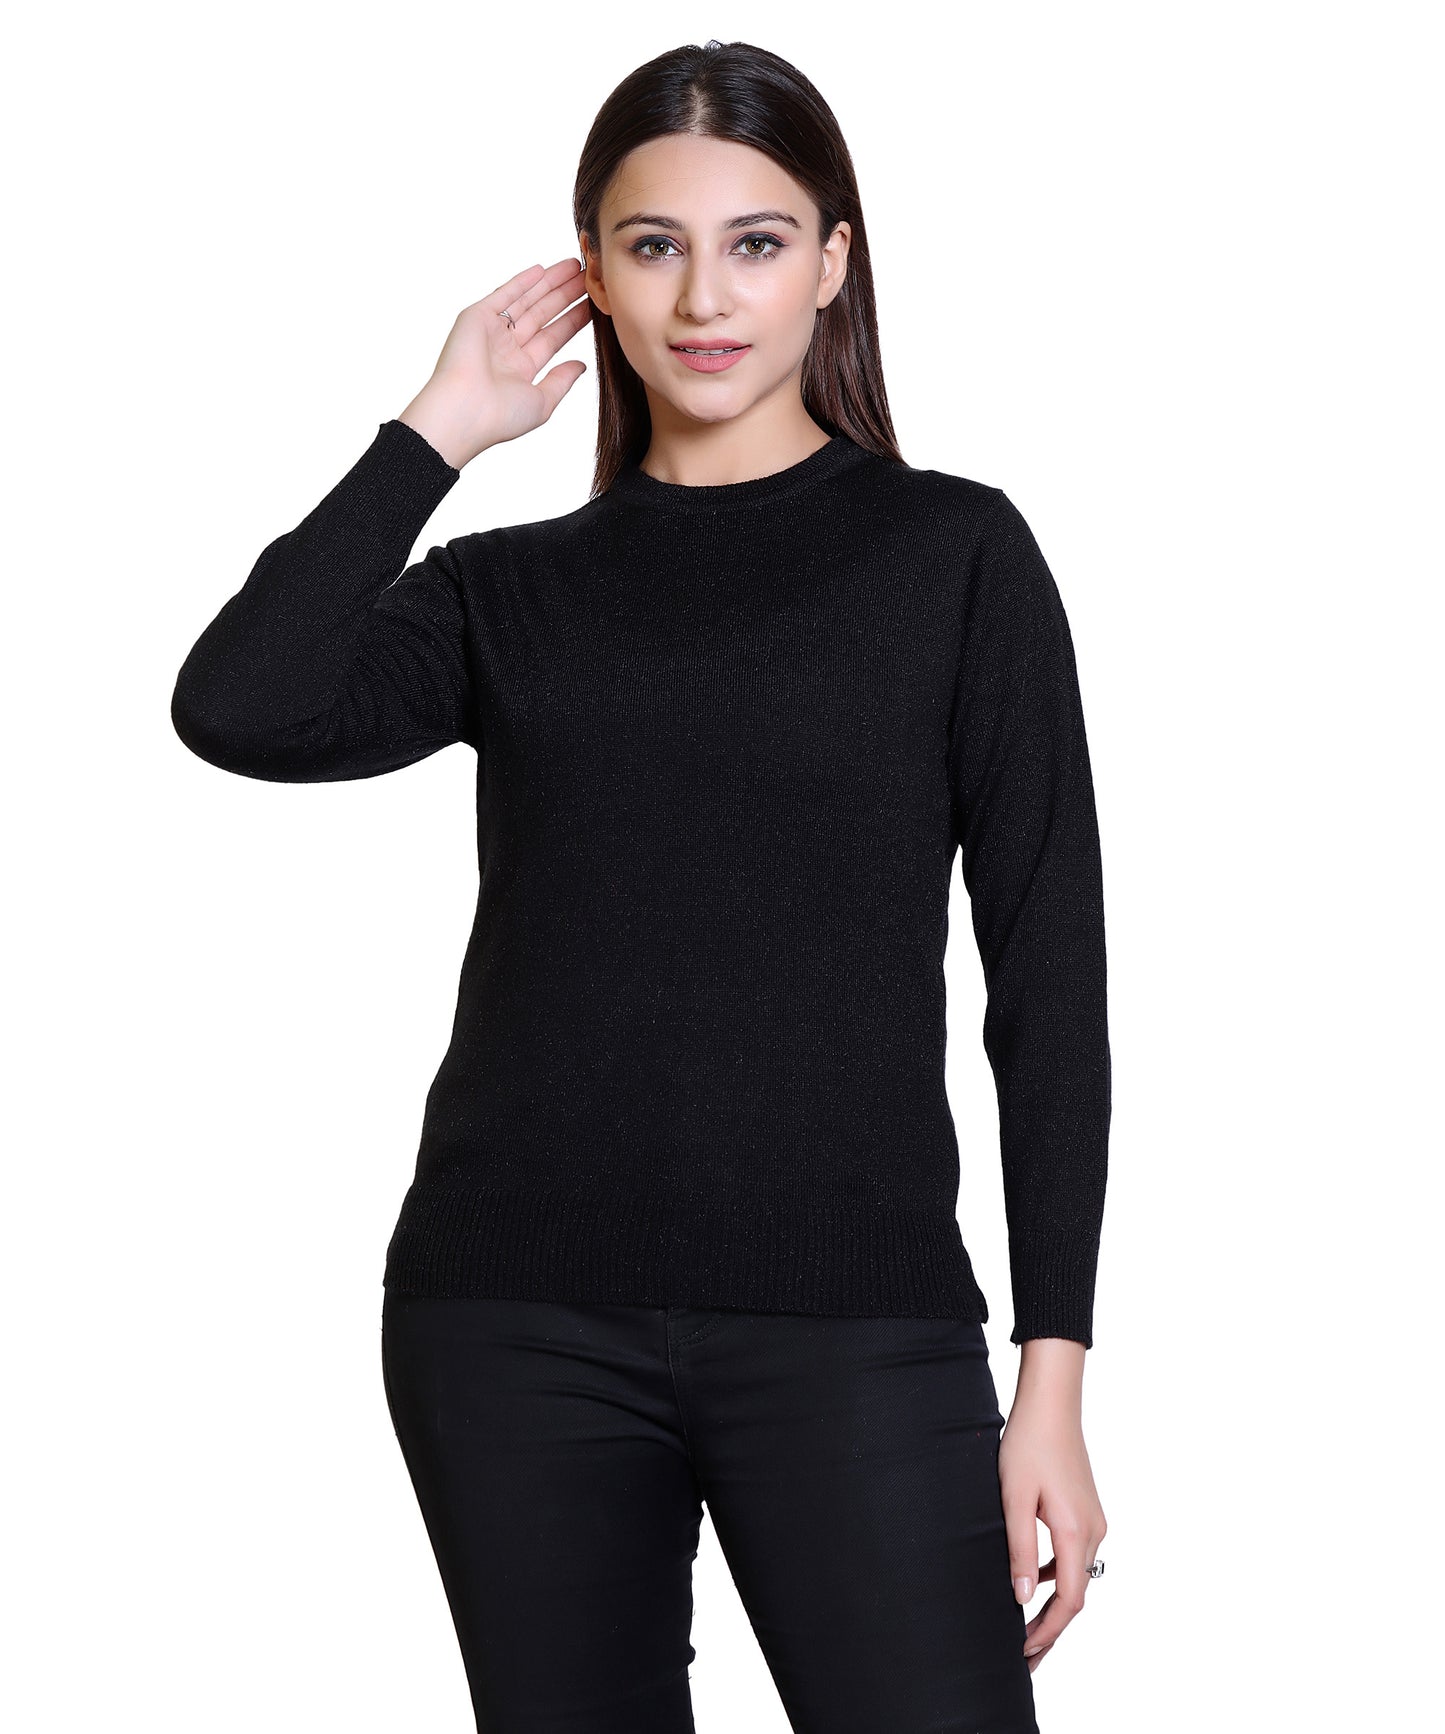 Women's Solid Woolen Full Sleeves Sweater